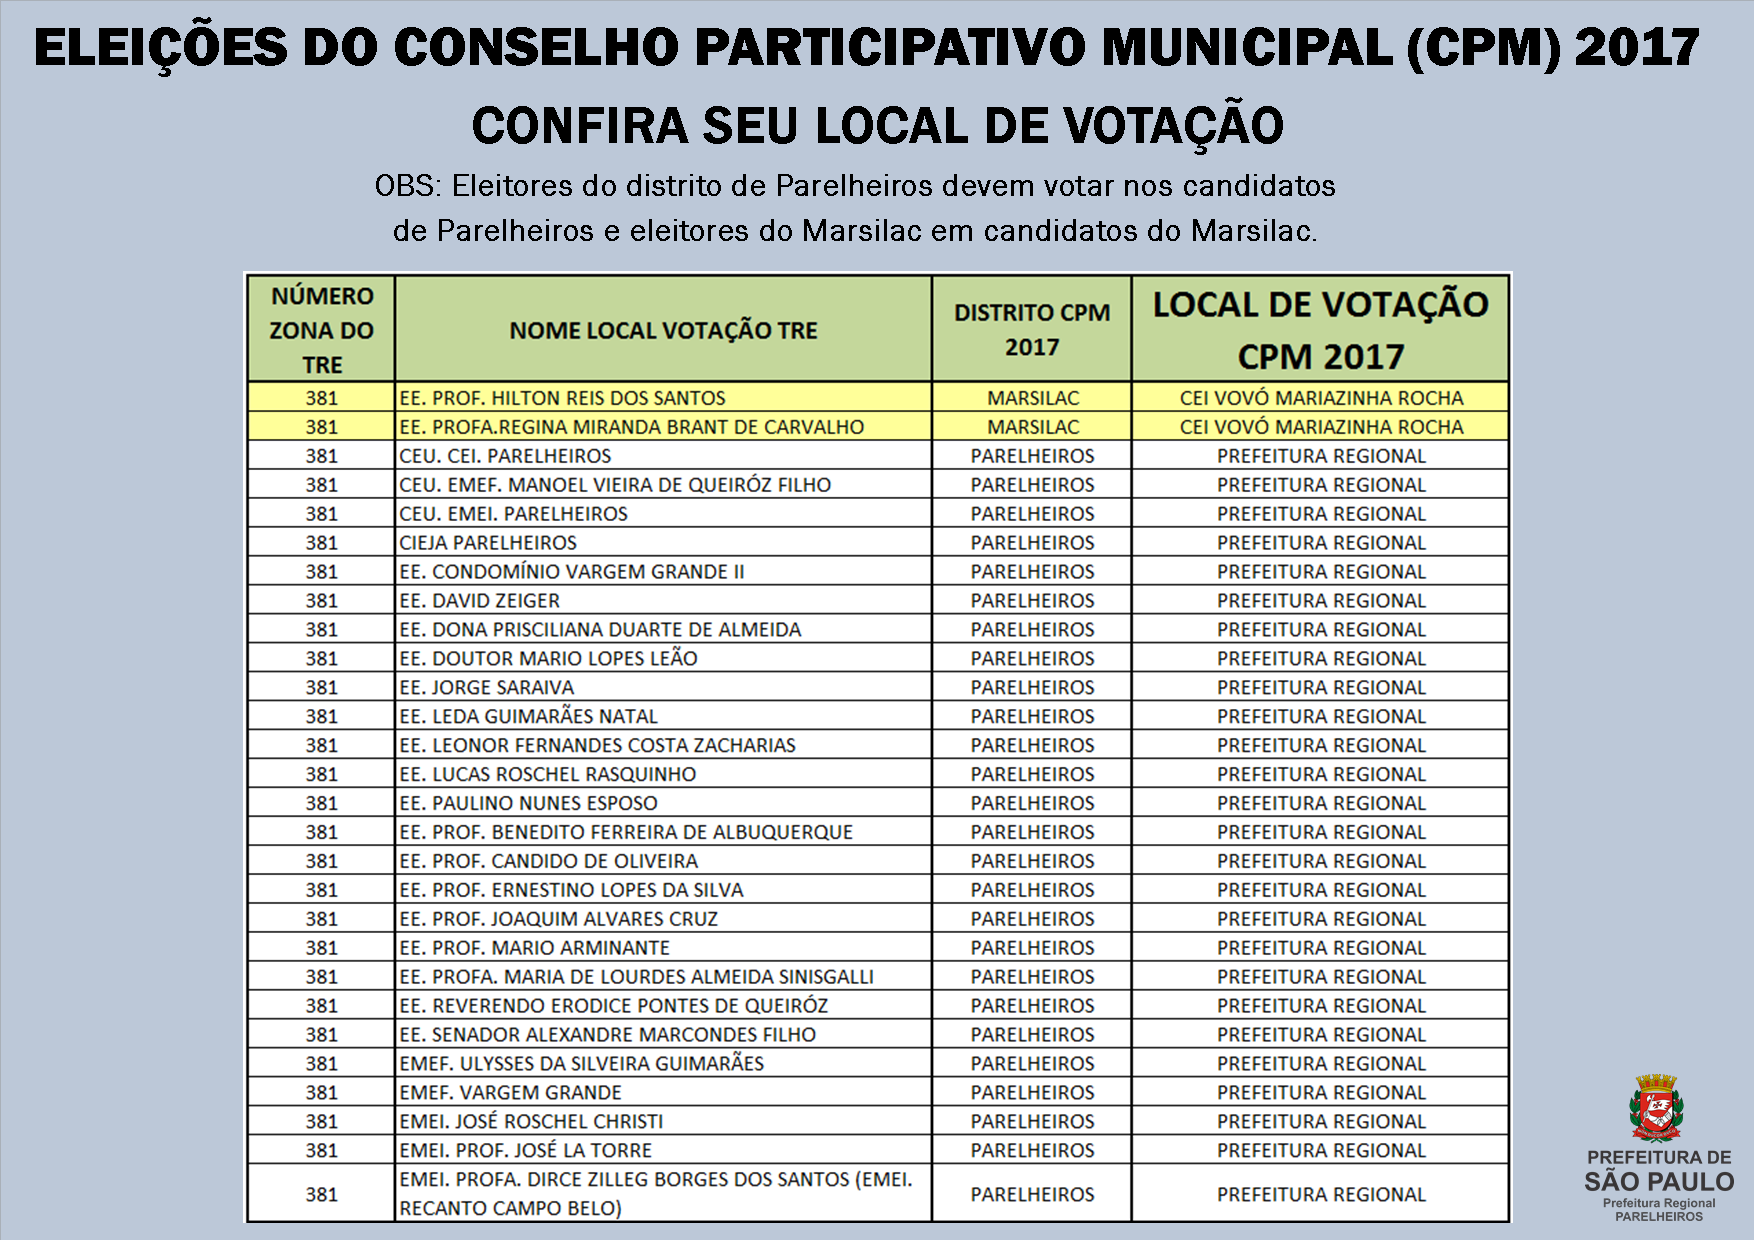 Tabela apresenta locais de votação do CPM 2017